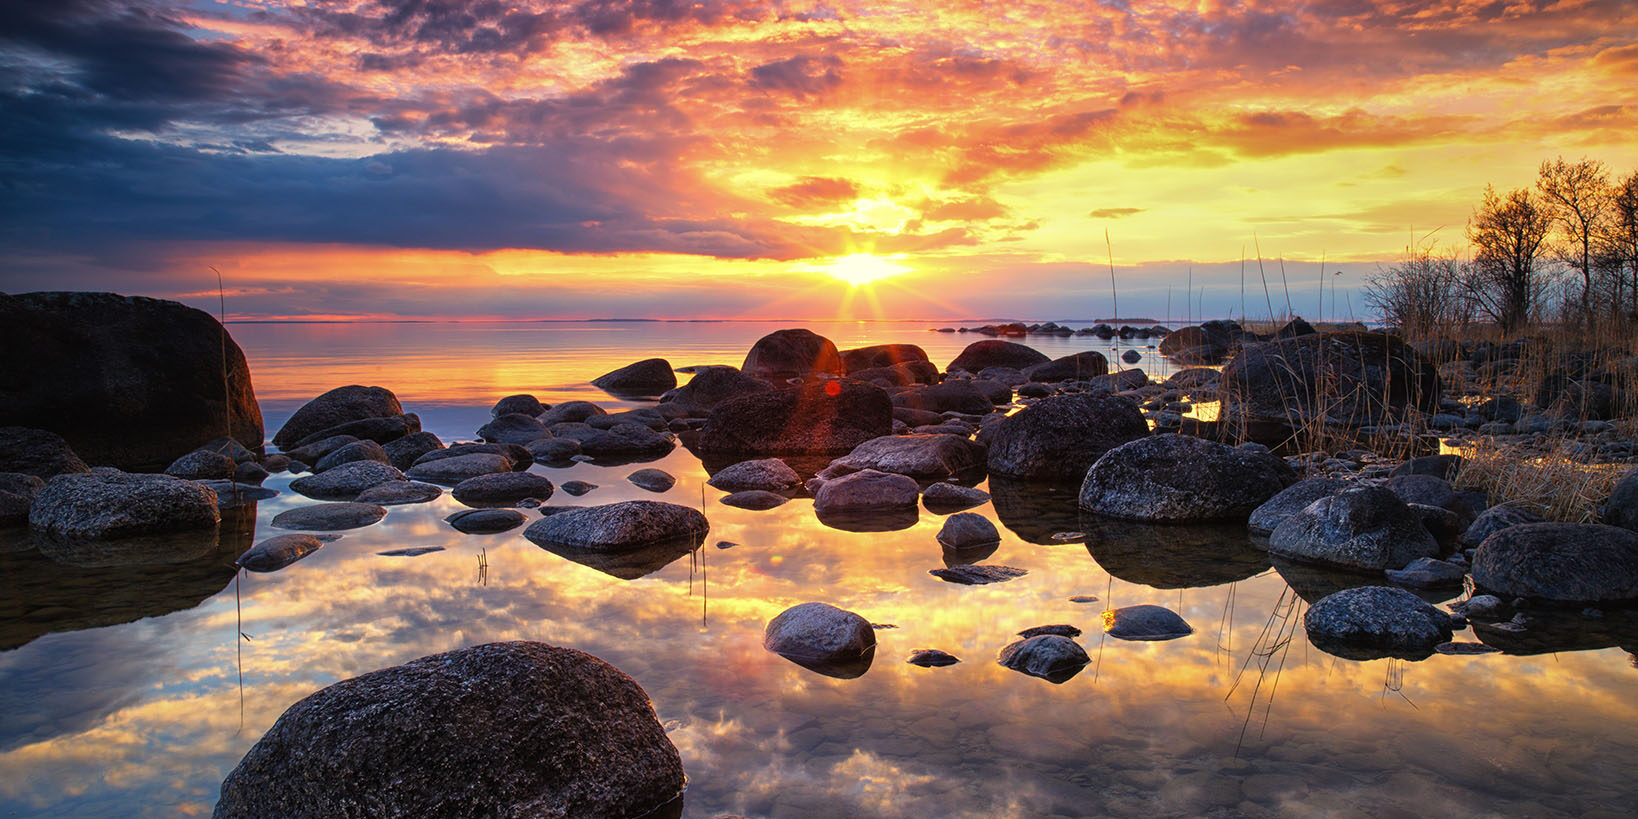 En färgsprakande solnedgång i Råssnäs. Himlens alla färger reflekterar sig i vattnet, i förgrunden ligger det olika storlekar av stenar i vattnet.